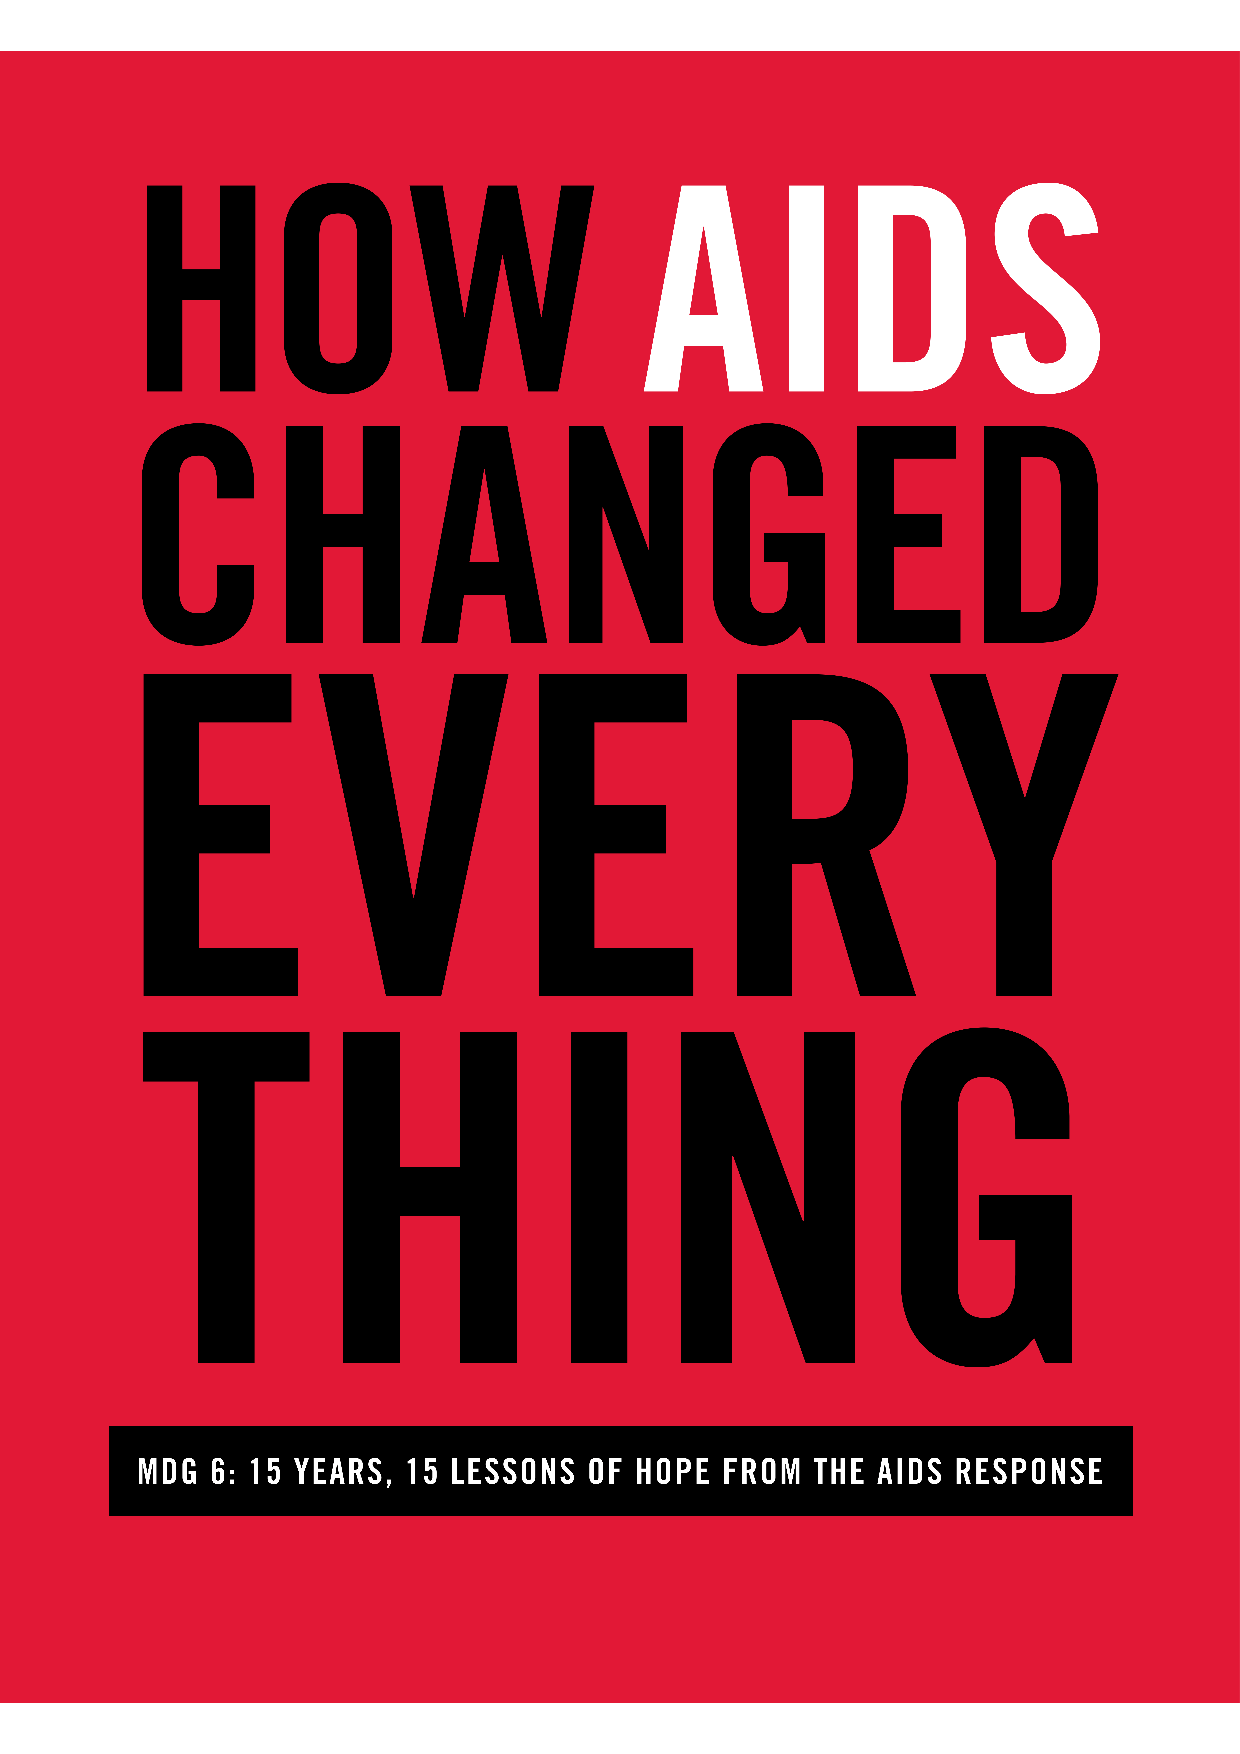 2015 UNAIDS COMO A AIDS MUDOU TUDO - ODM 6 15 ANOS, 15 LIÇÕES DE ESPERANÇA DA RESPOSTA À AIDS